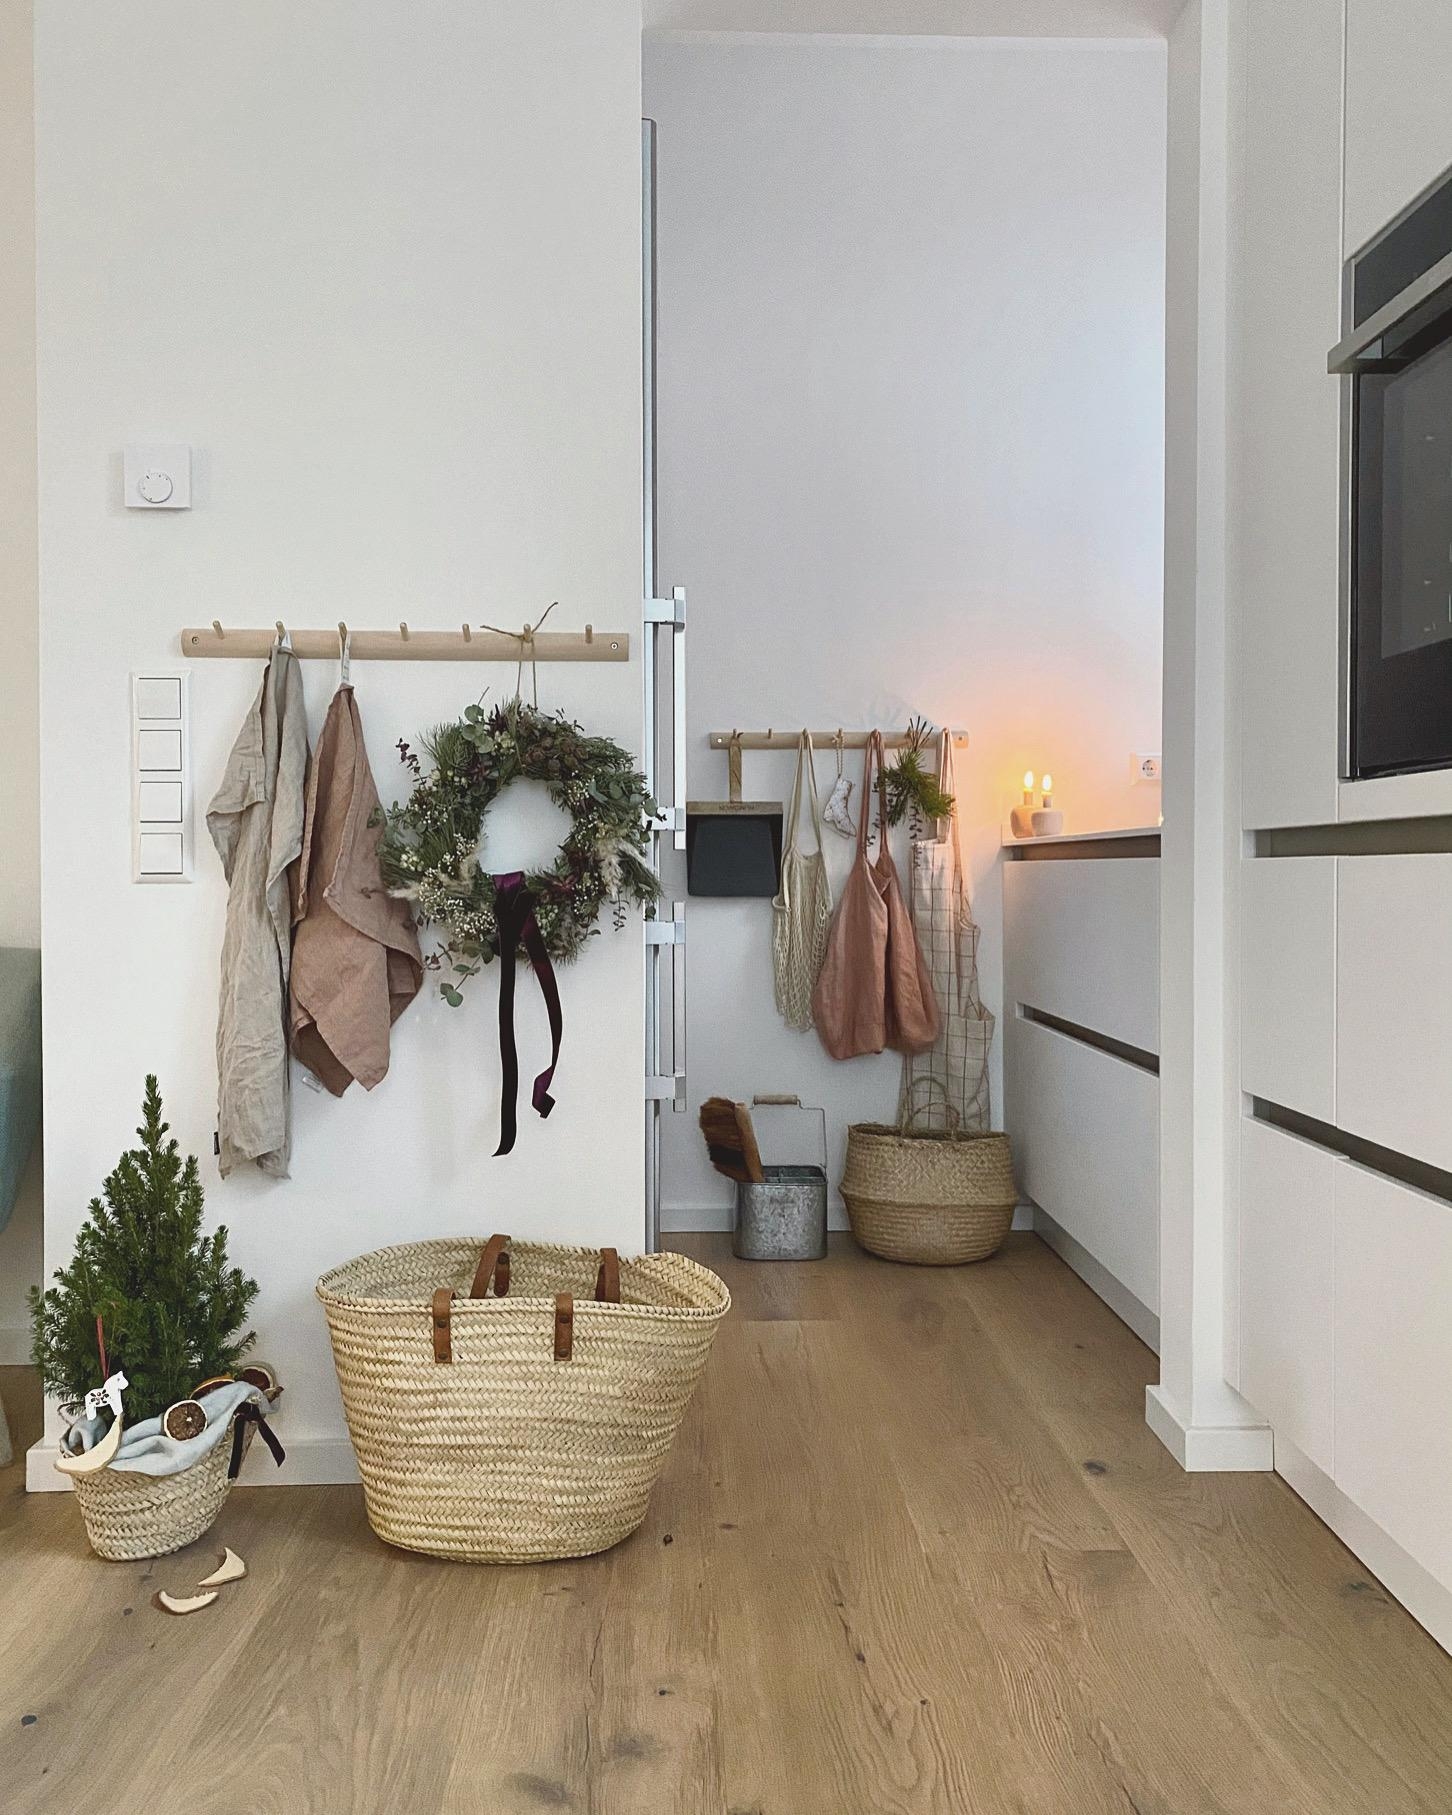 Weihnachten 2020 💫
#küche#kitchen#interior#weisseküche#couchliebt#hygge